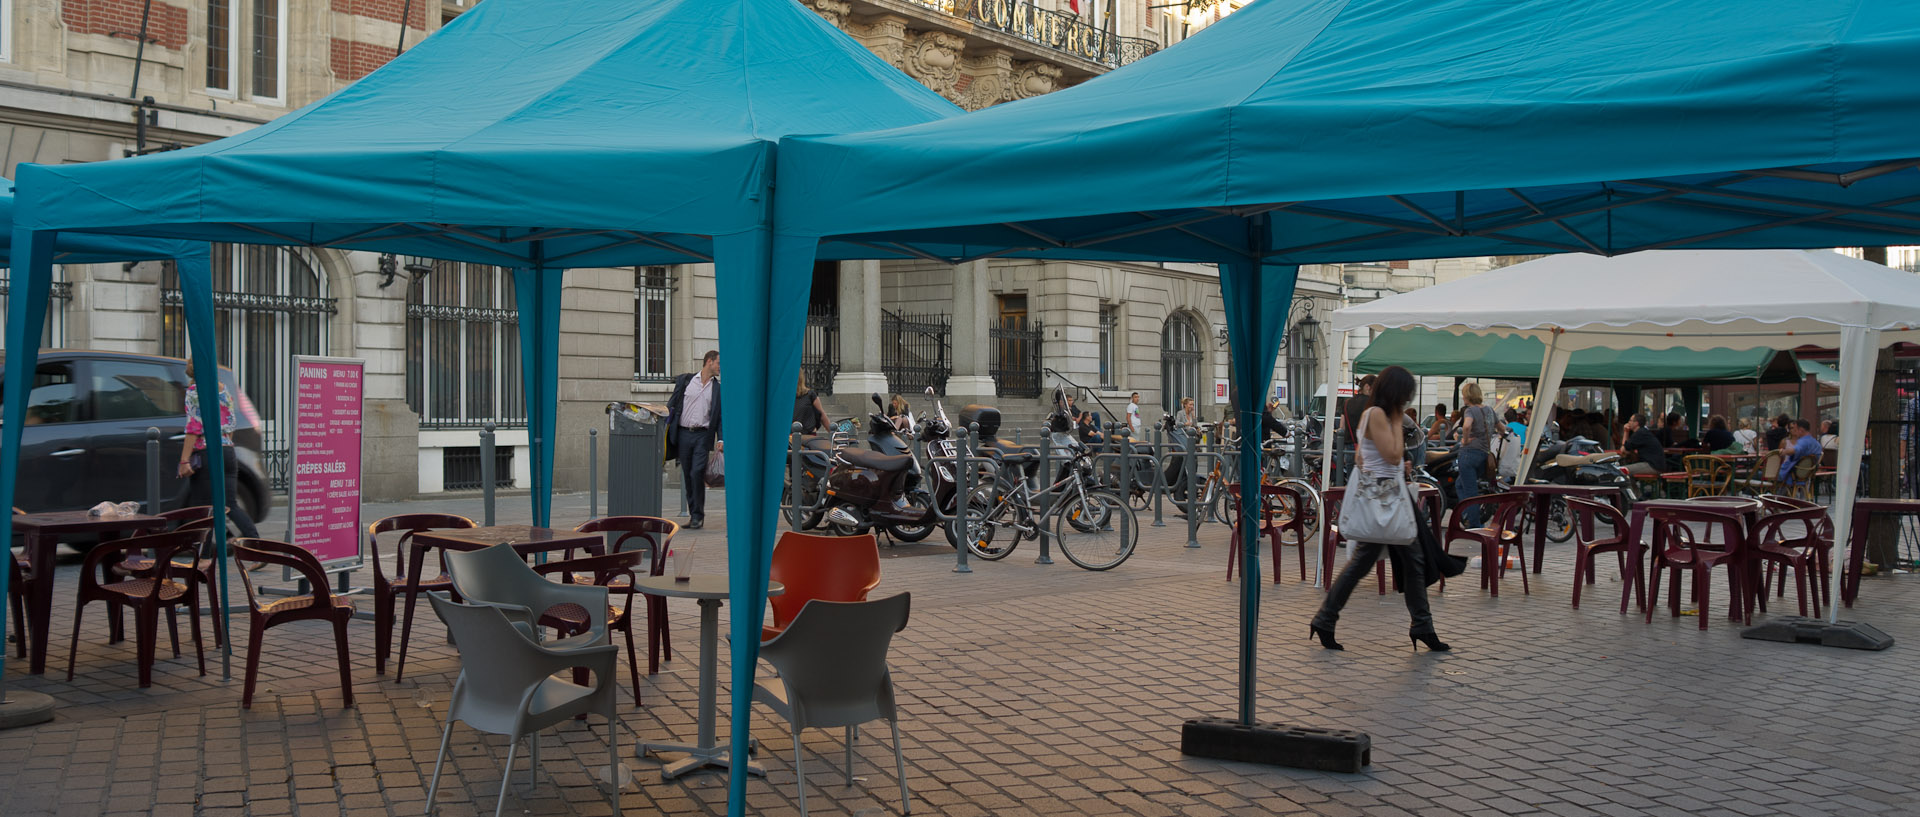 Intallation de tentes pour la braderie, place du Théâtre, à Lille.